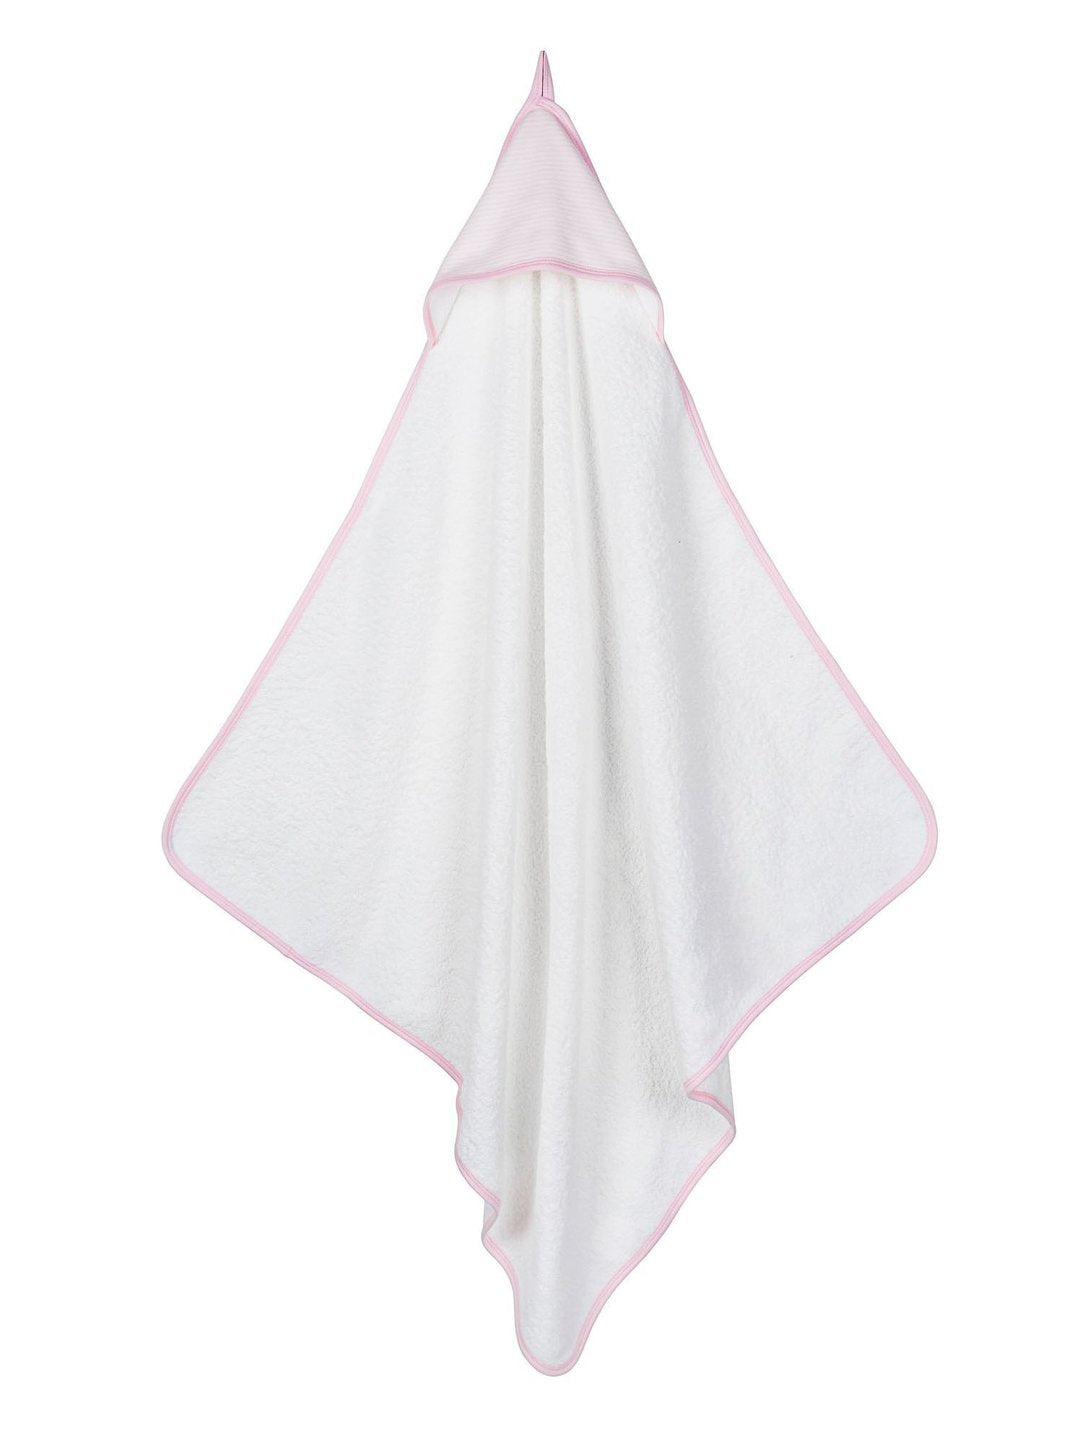 Deluxe Hooded Towel - Pink Stripe